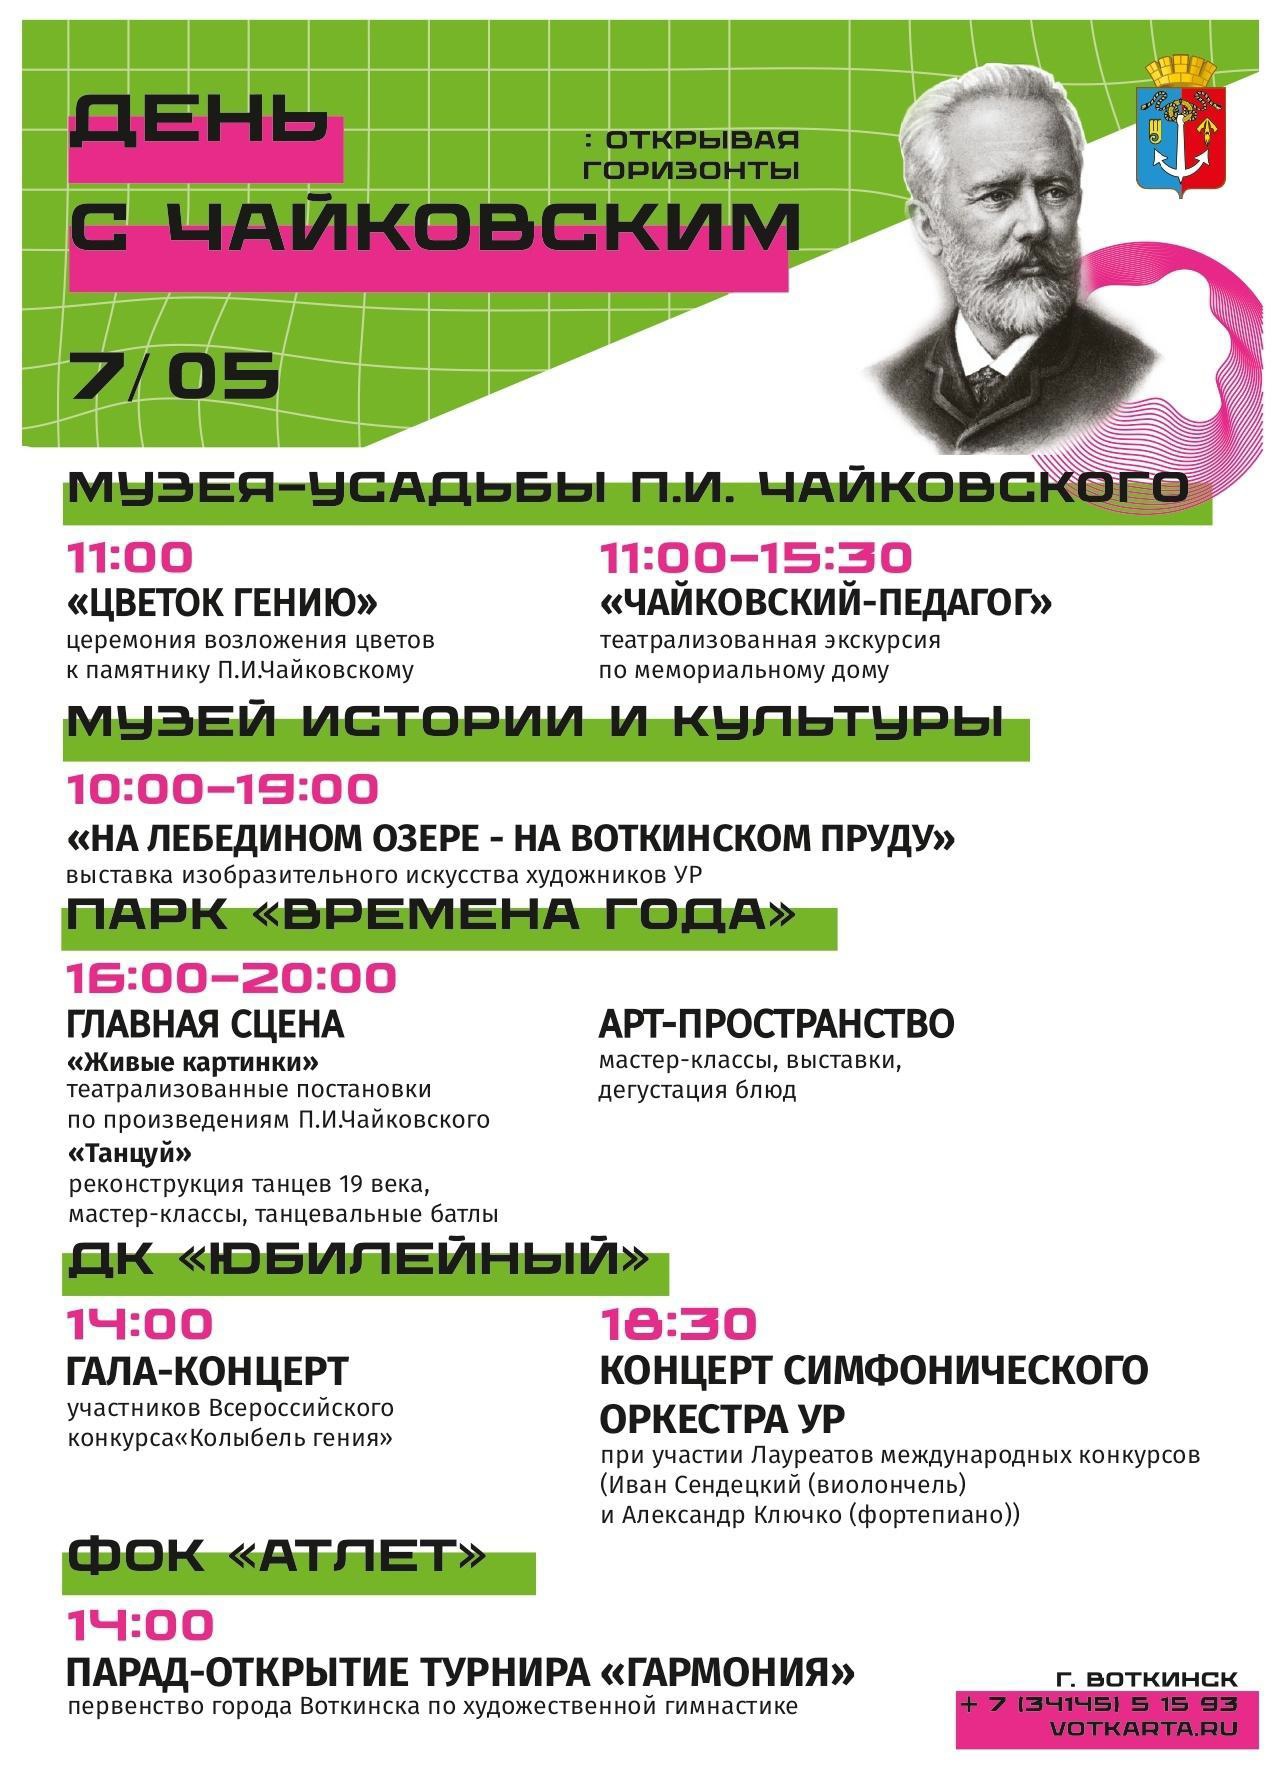 Приглашаем 7 мая в Воткинск - погрузиться в атмосферу музыки, красоты и творчества!.